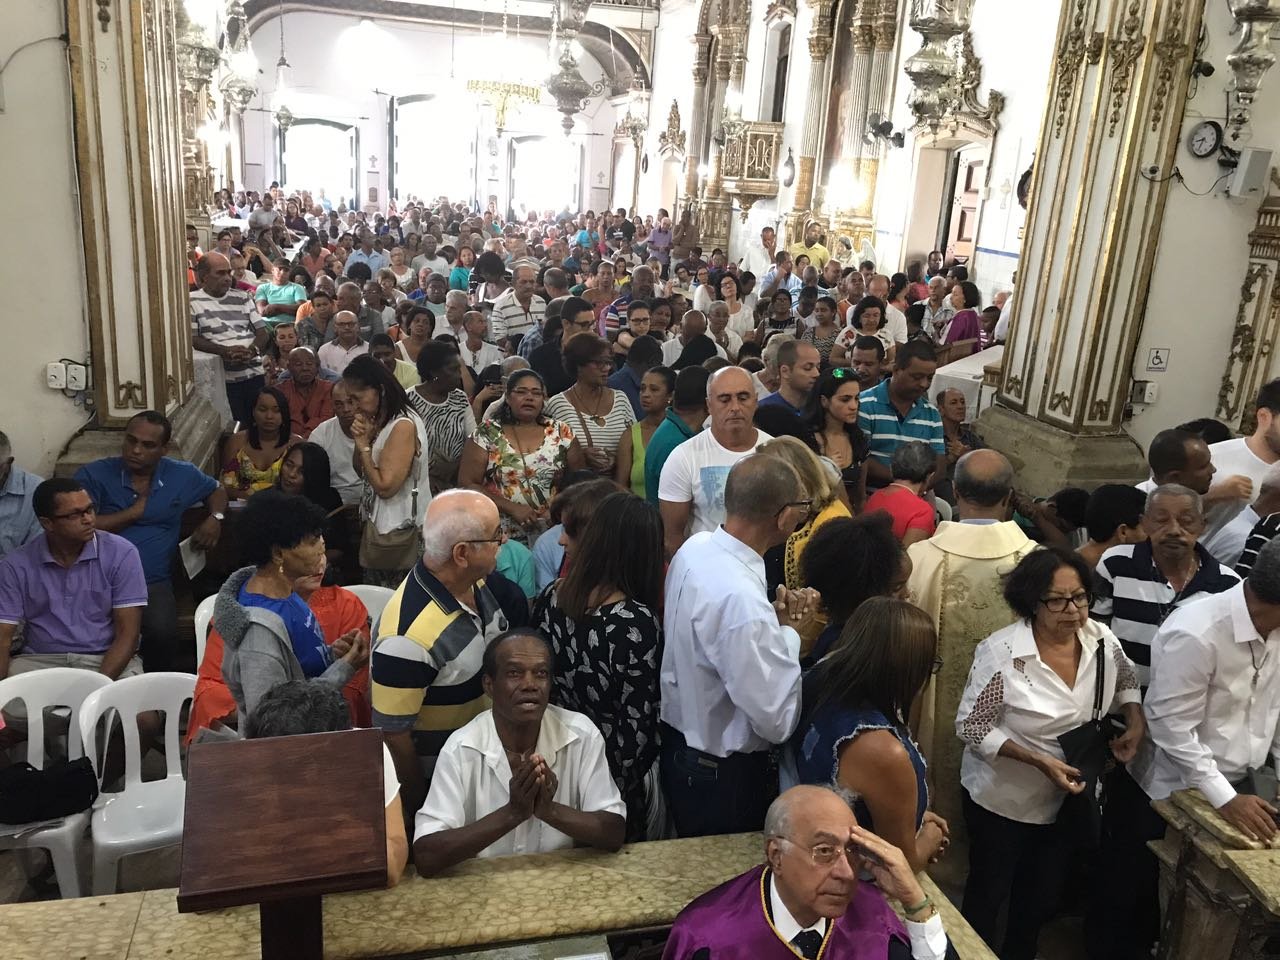 Fiis lotam Baslica do Bonfim na Missa das 7h30 deste domingo (06)